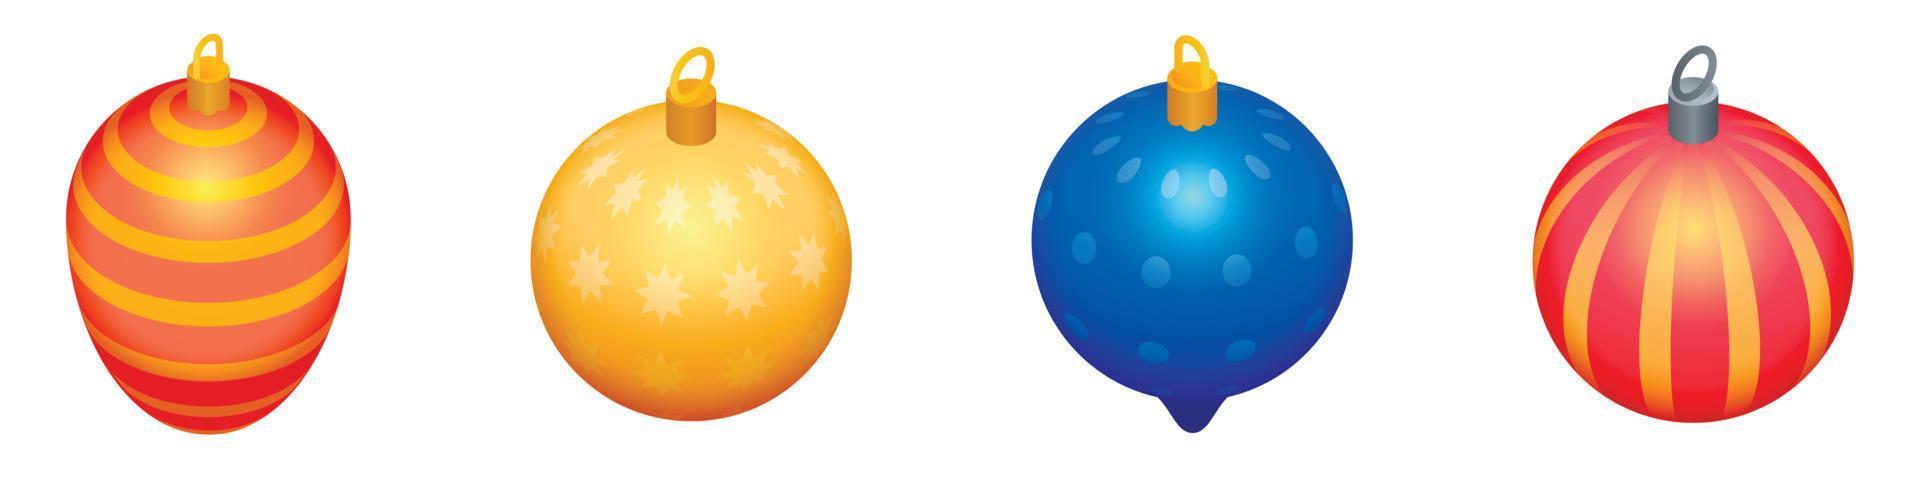 conjunto de iconos de juguetes de árbol de Navidad, estilo isométrico vector